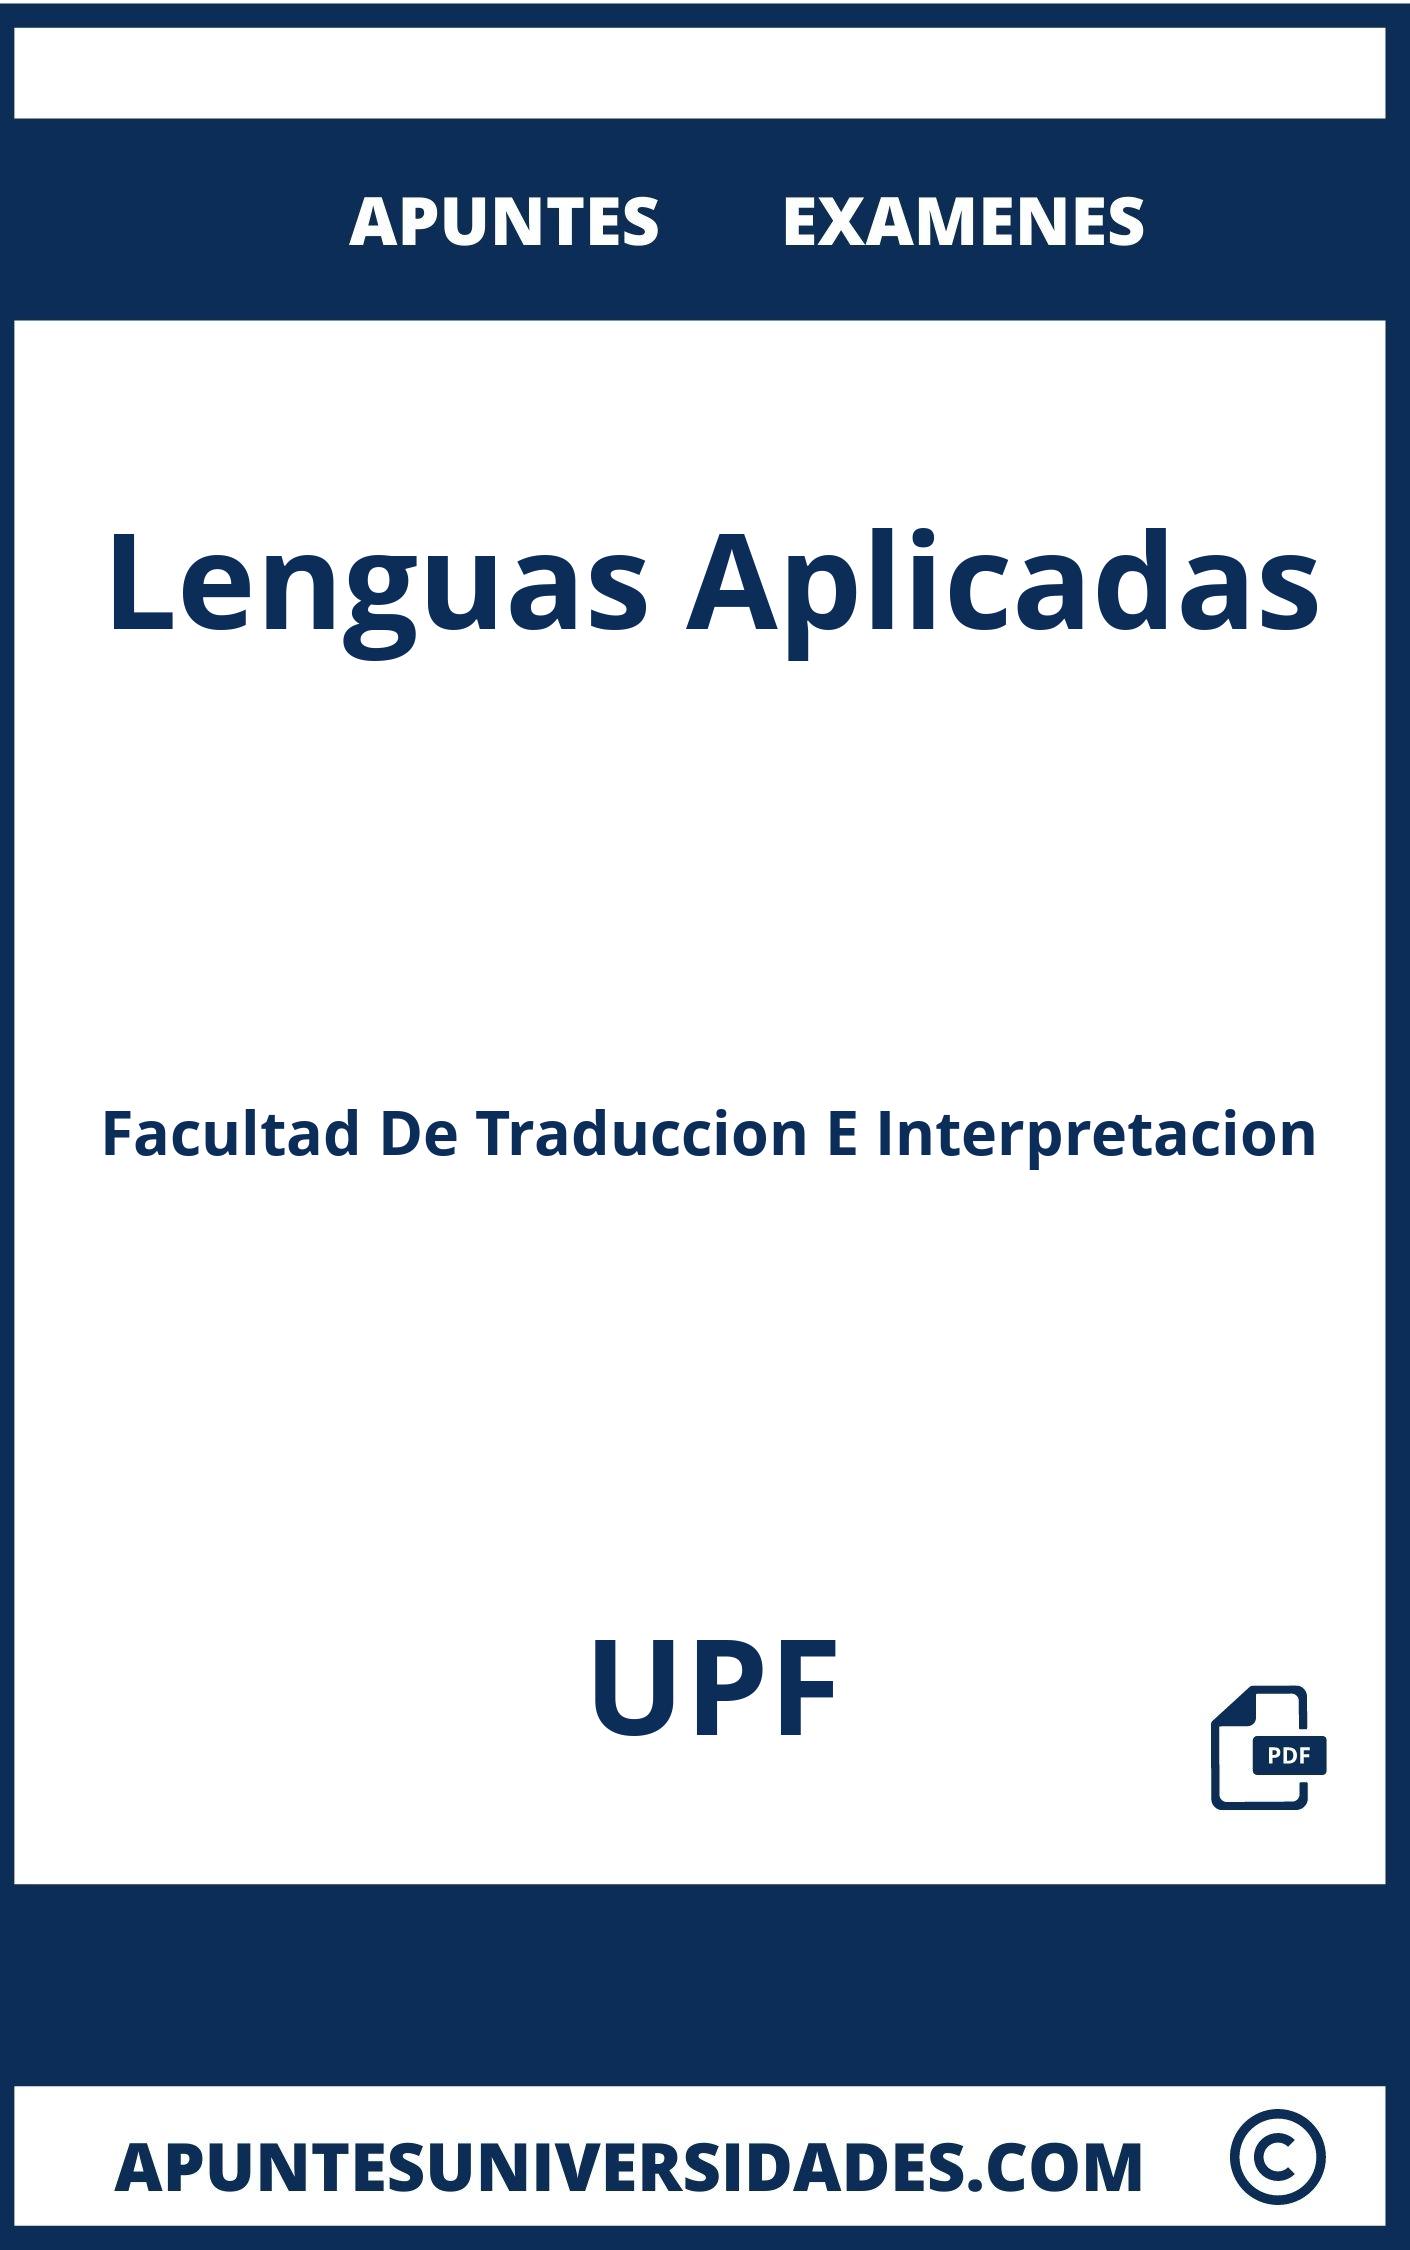 Examenes Apuntes Lenguas Aplicadas UPF